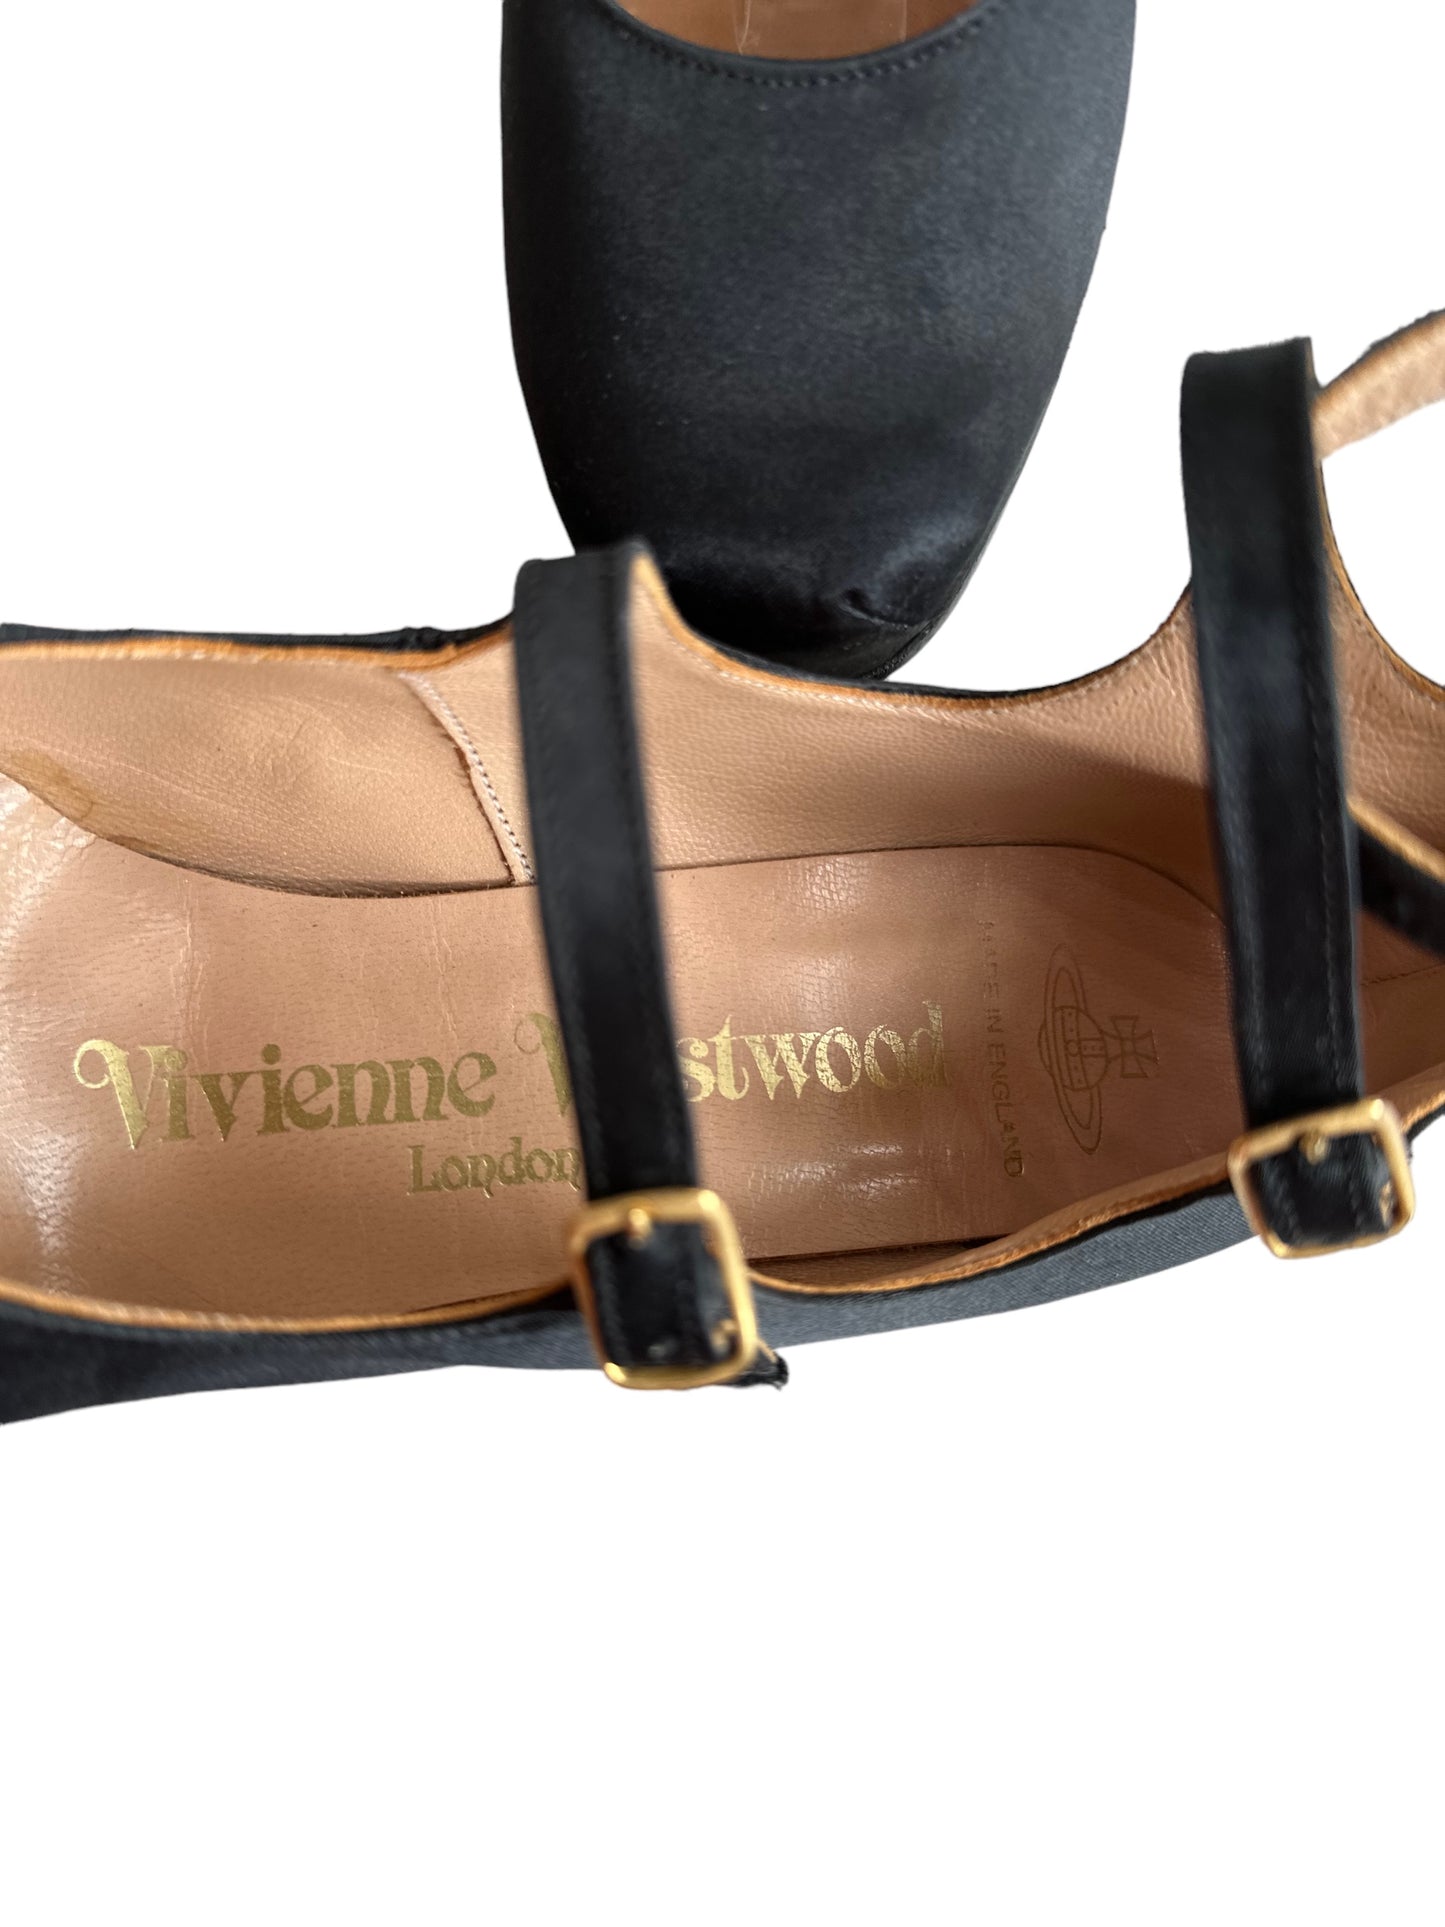 Vivienne Westwood prostitute 1994 mary janes heels